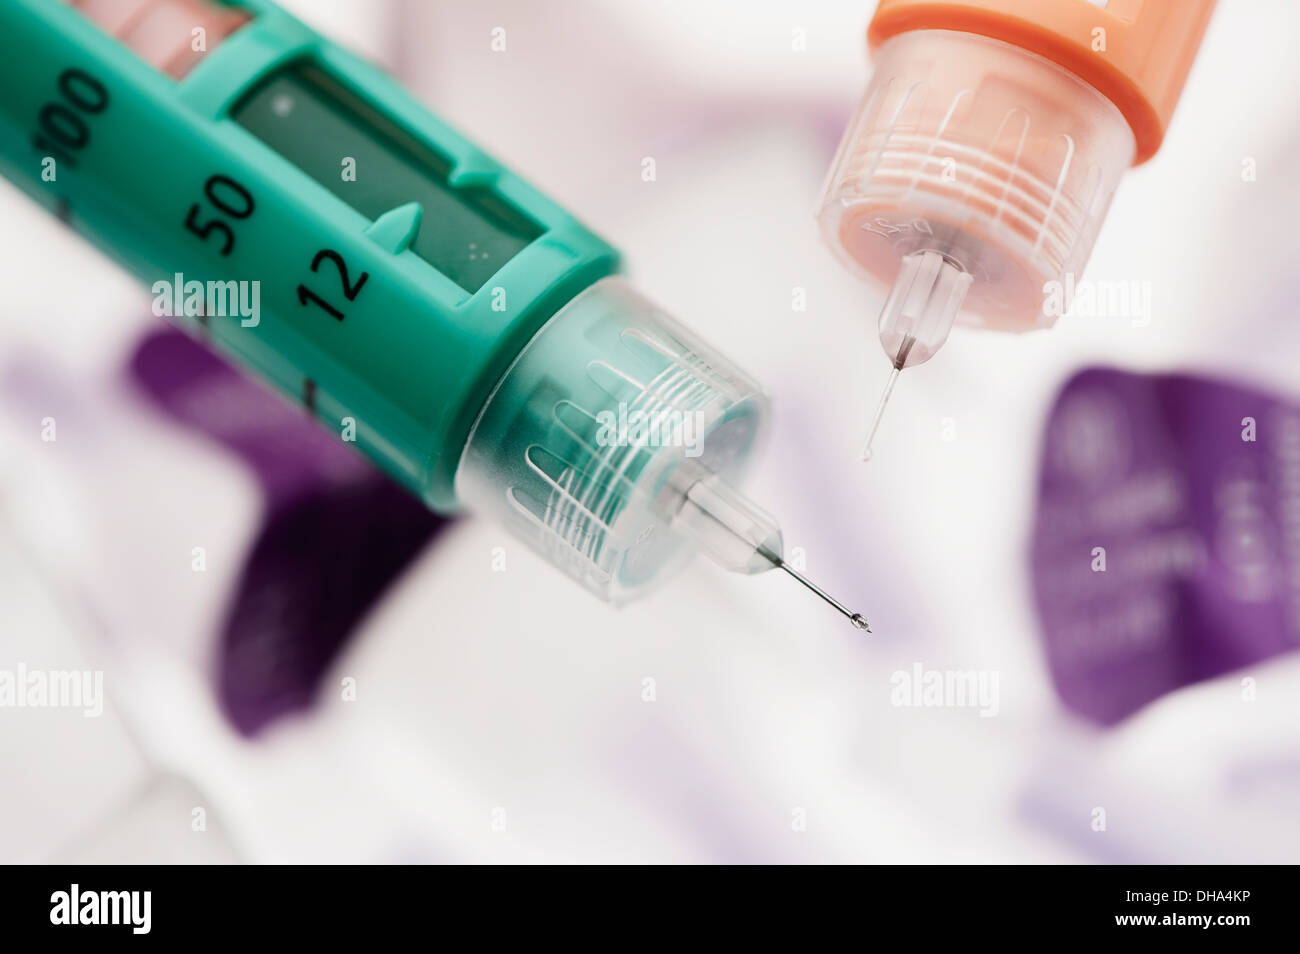 Stylo à insuline avec leurs aiguilles et l'insuline vu sortant de l'un d'entre eux ; California, United States of America Banque D'Images